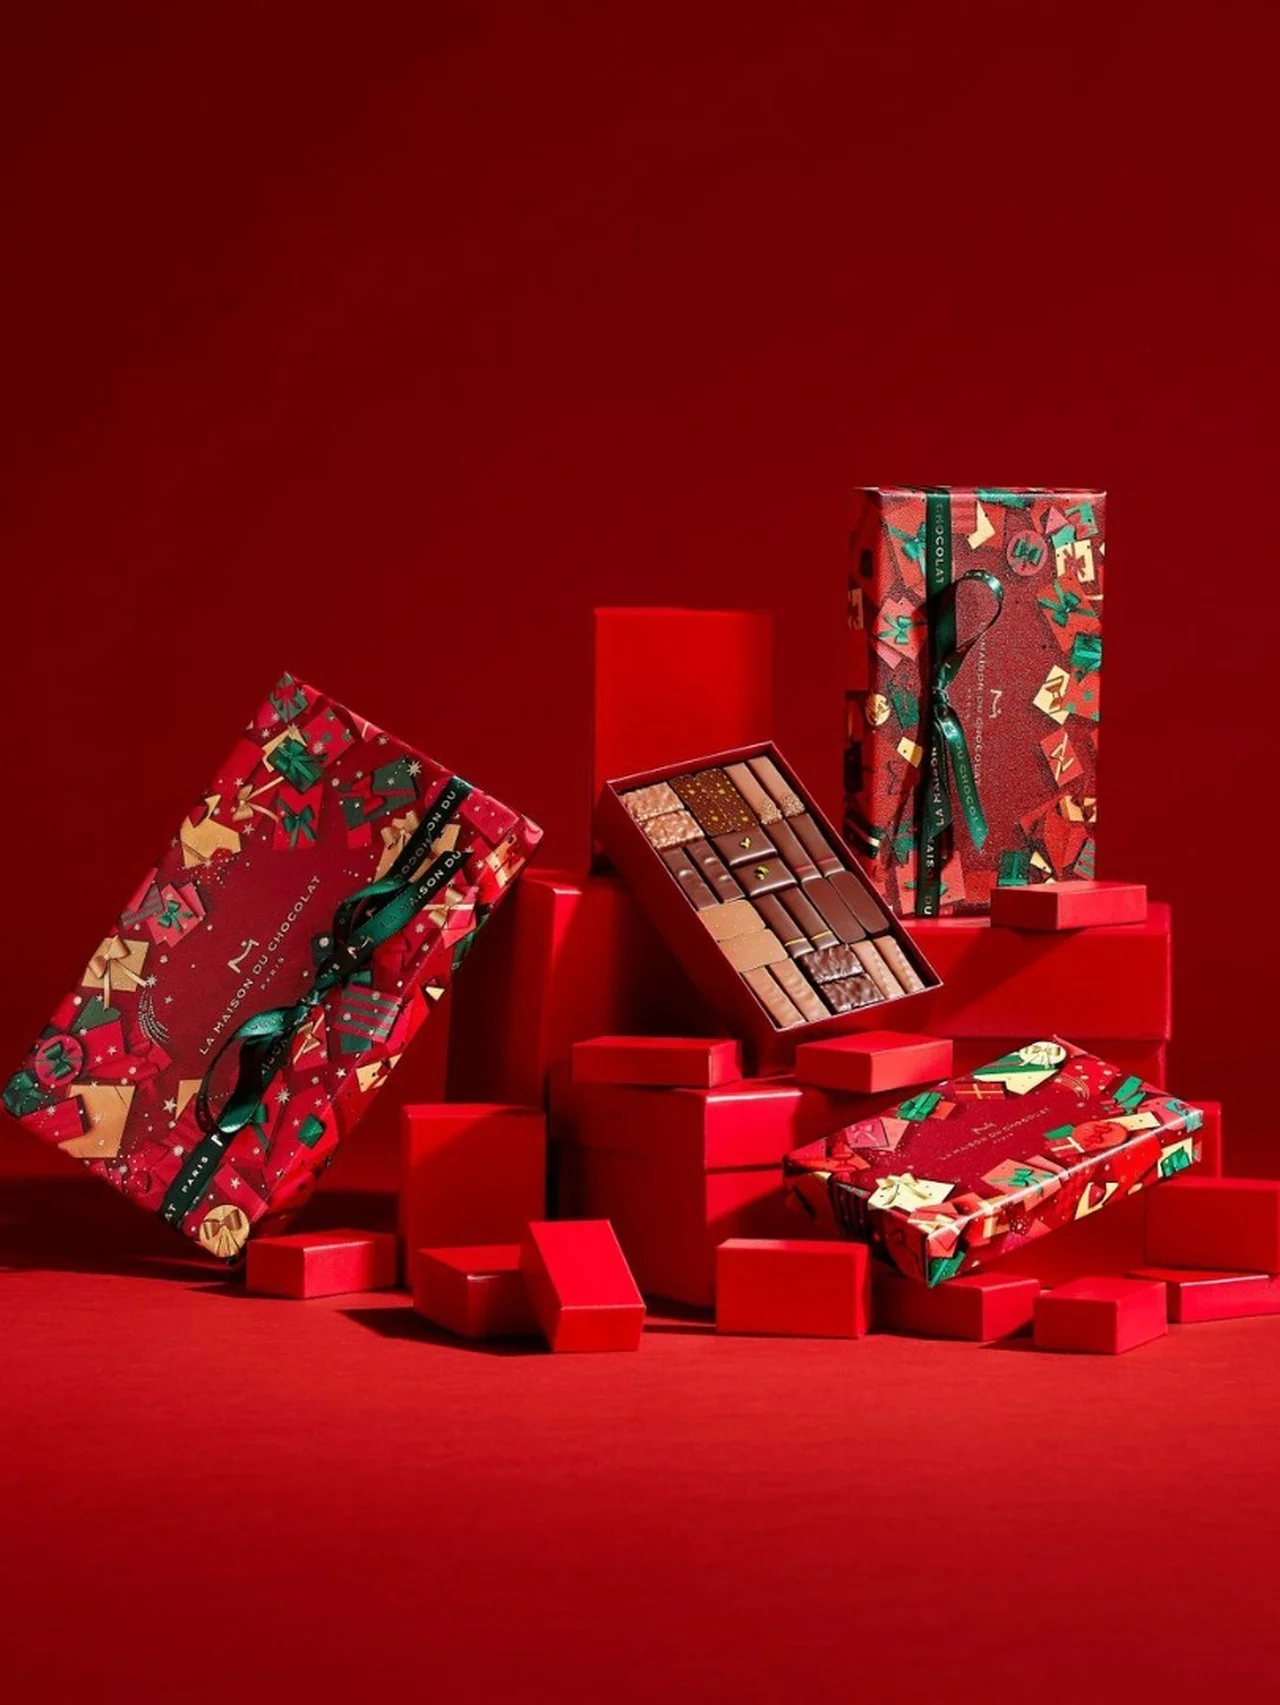 贈る喜びと贈られる喜びを特別なショコラで表現。【ラ・メゾン・デュ・ショコラ】の「ノエル アプソリュマン カドー」で華やかに彩られたクリスマスを